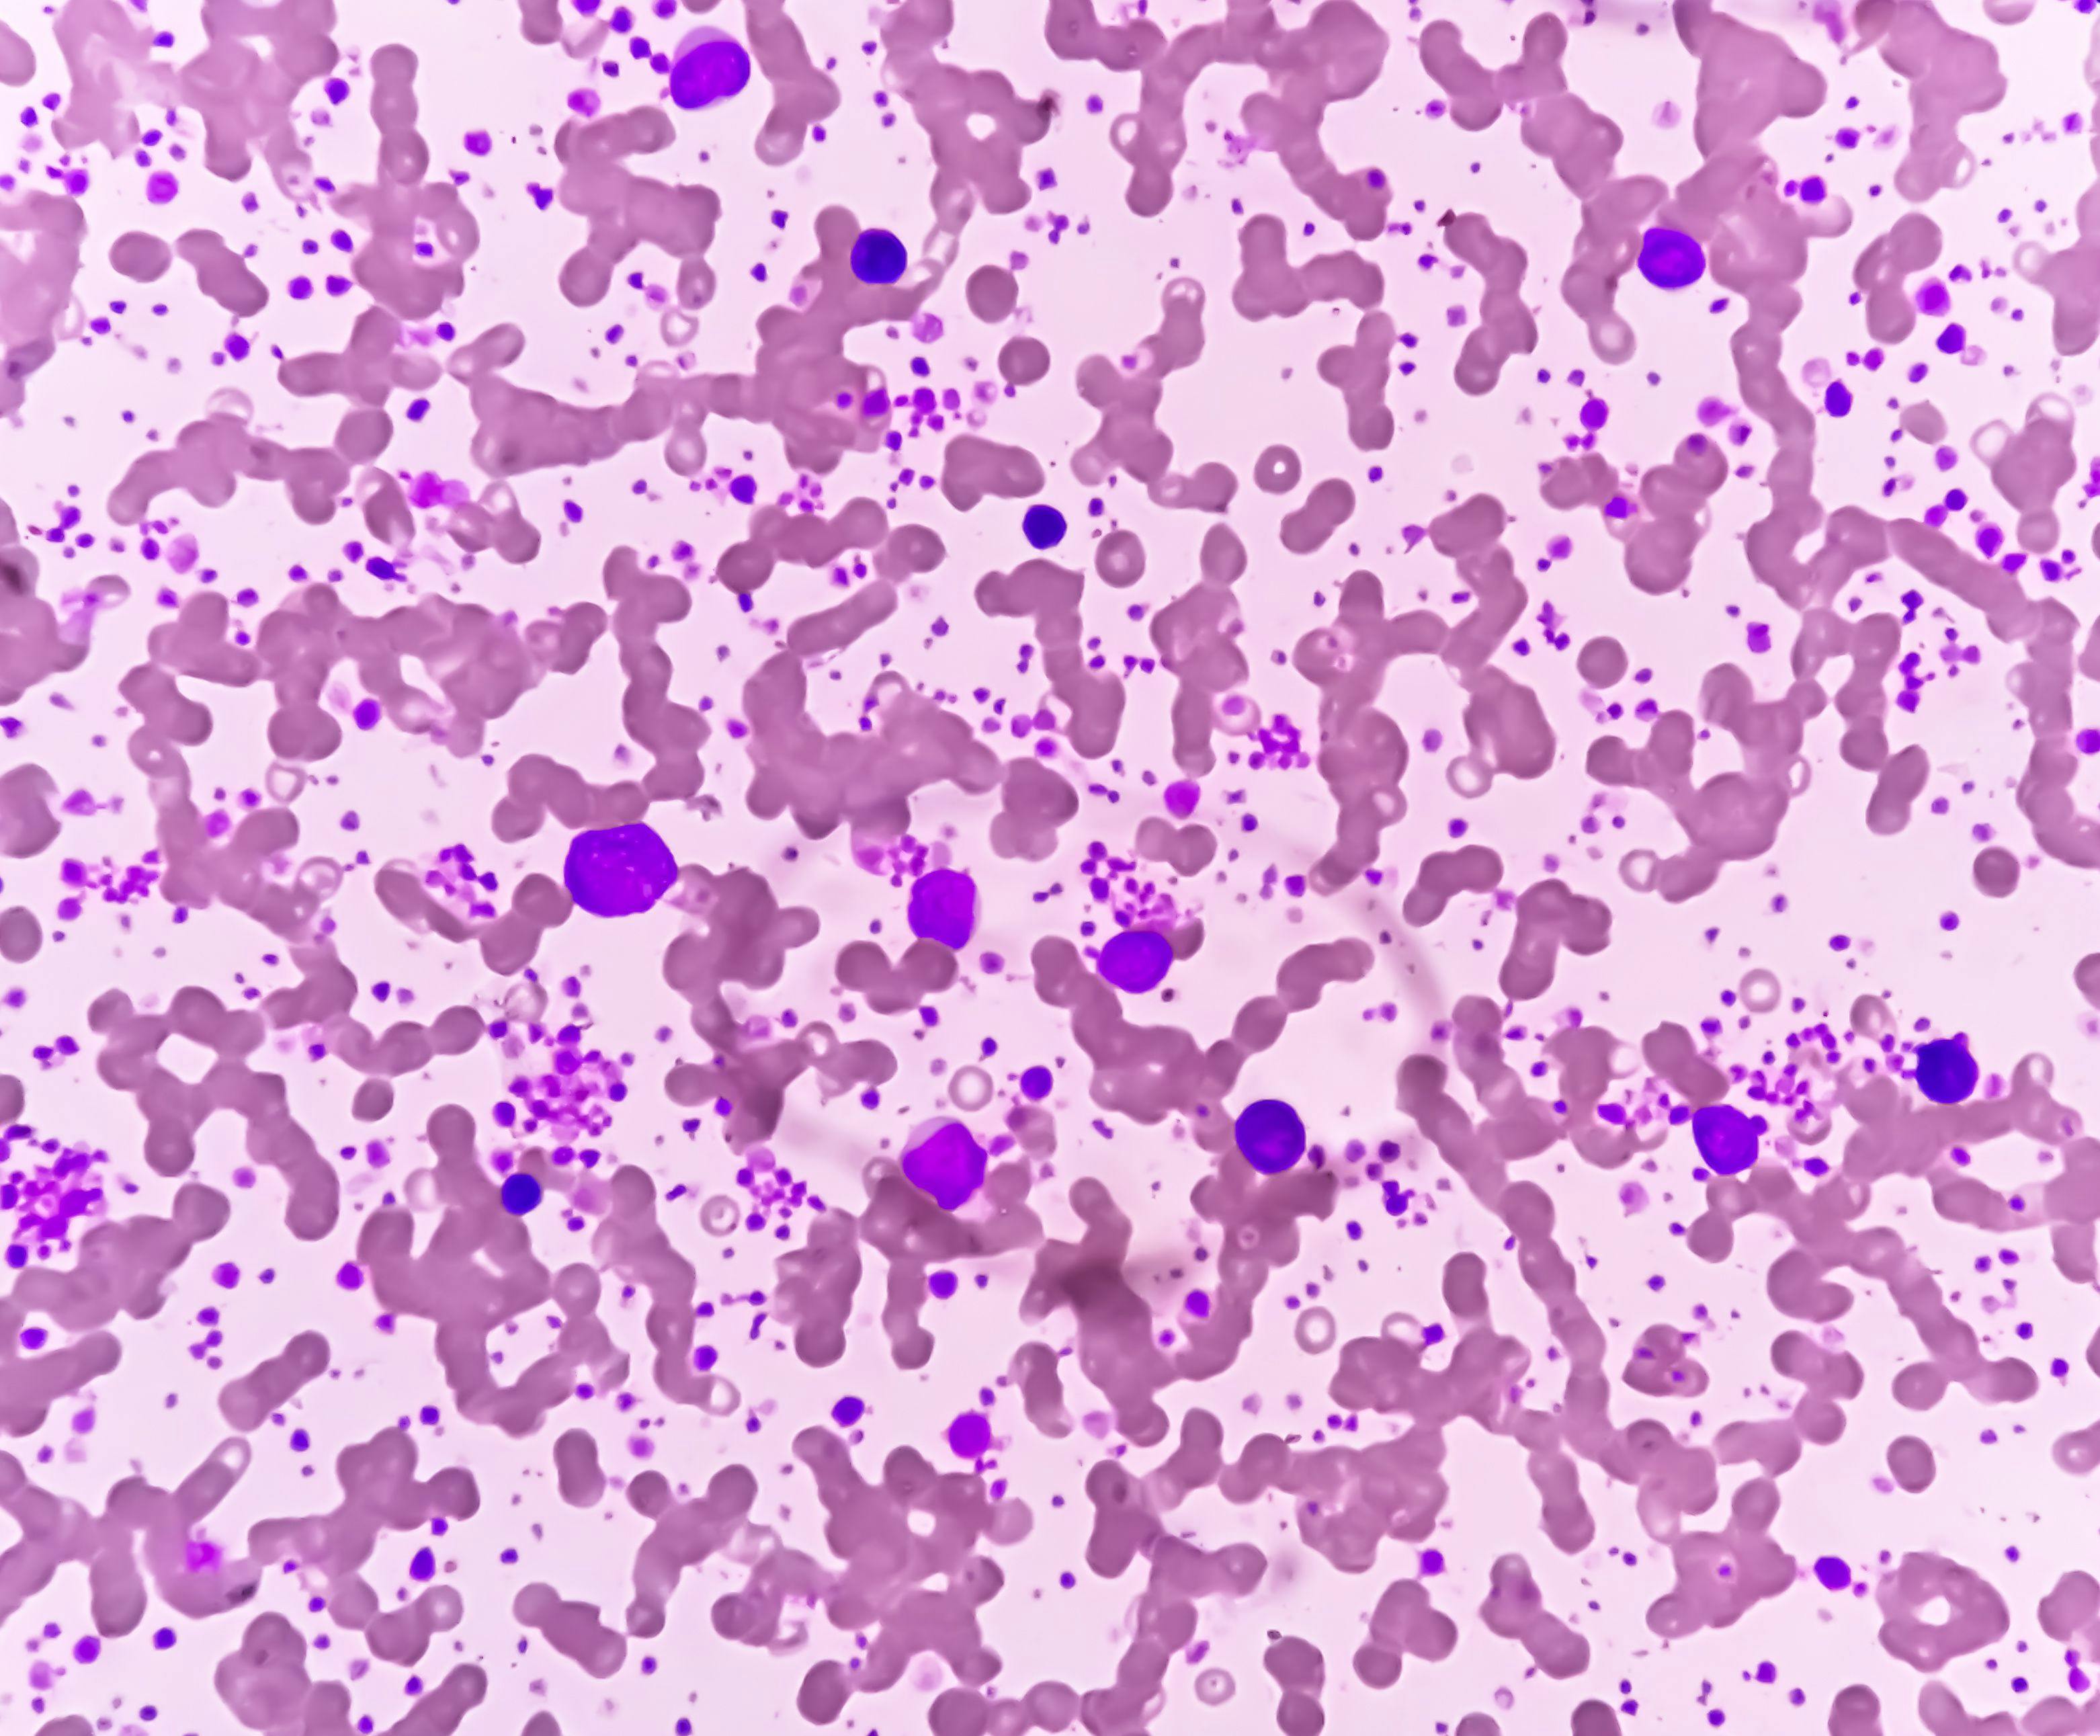 Chronic myeloid leukemia (CML) in accelerated phase with thrombocytosis. Chronic myelogenous leukemia. | Image Credit: © Saiful52 - stock.adobe.com